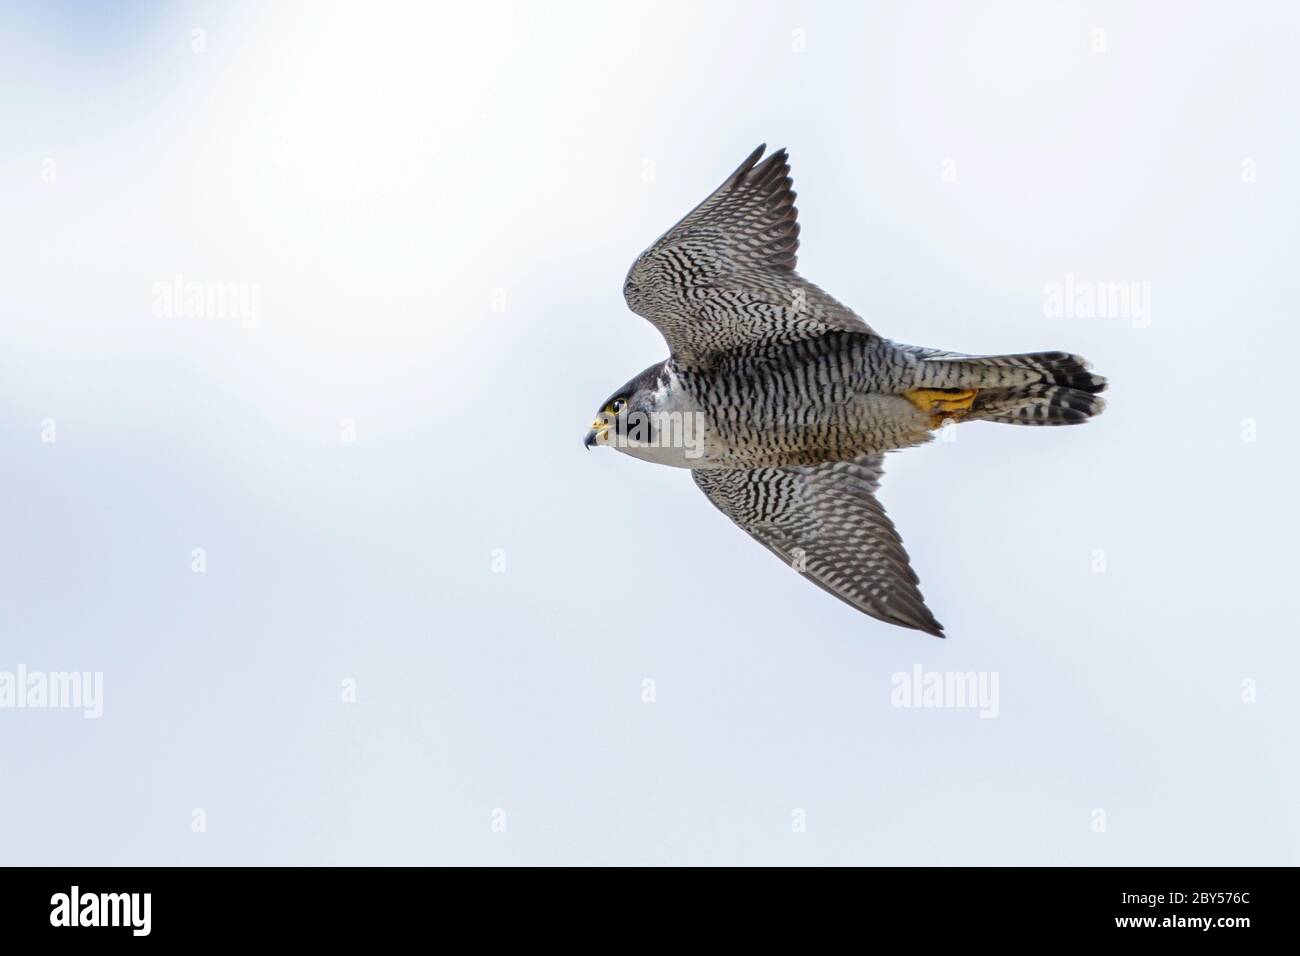 peregrine falcon (Falco peregrinus), in flight, Germany Stock Photo